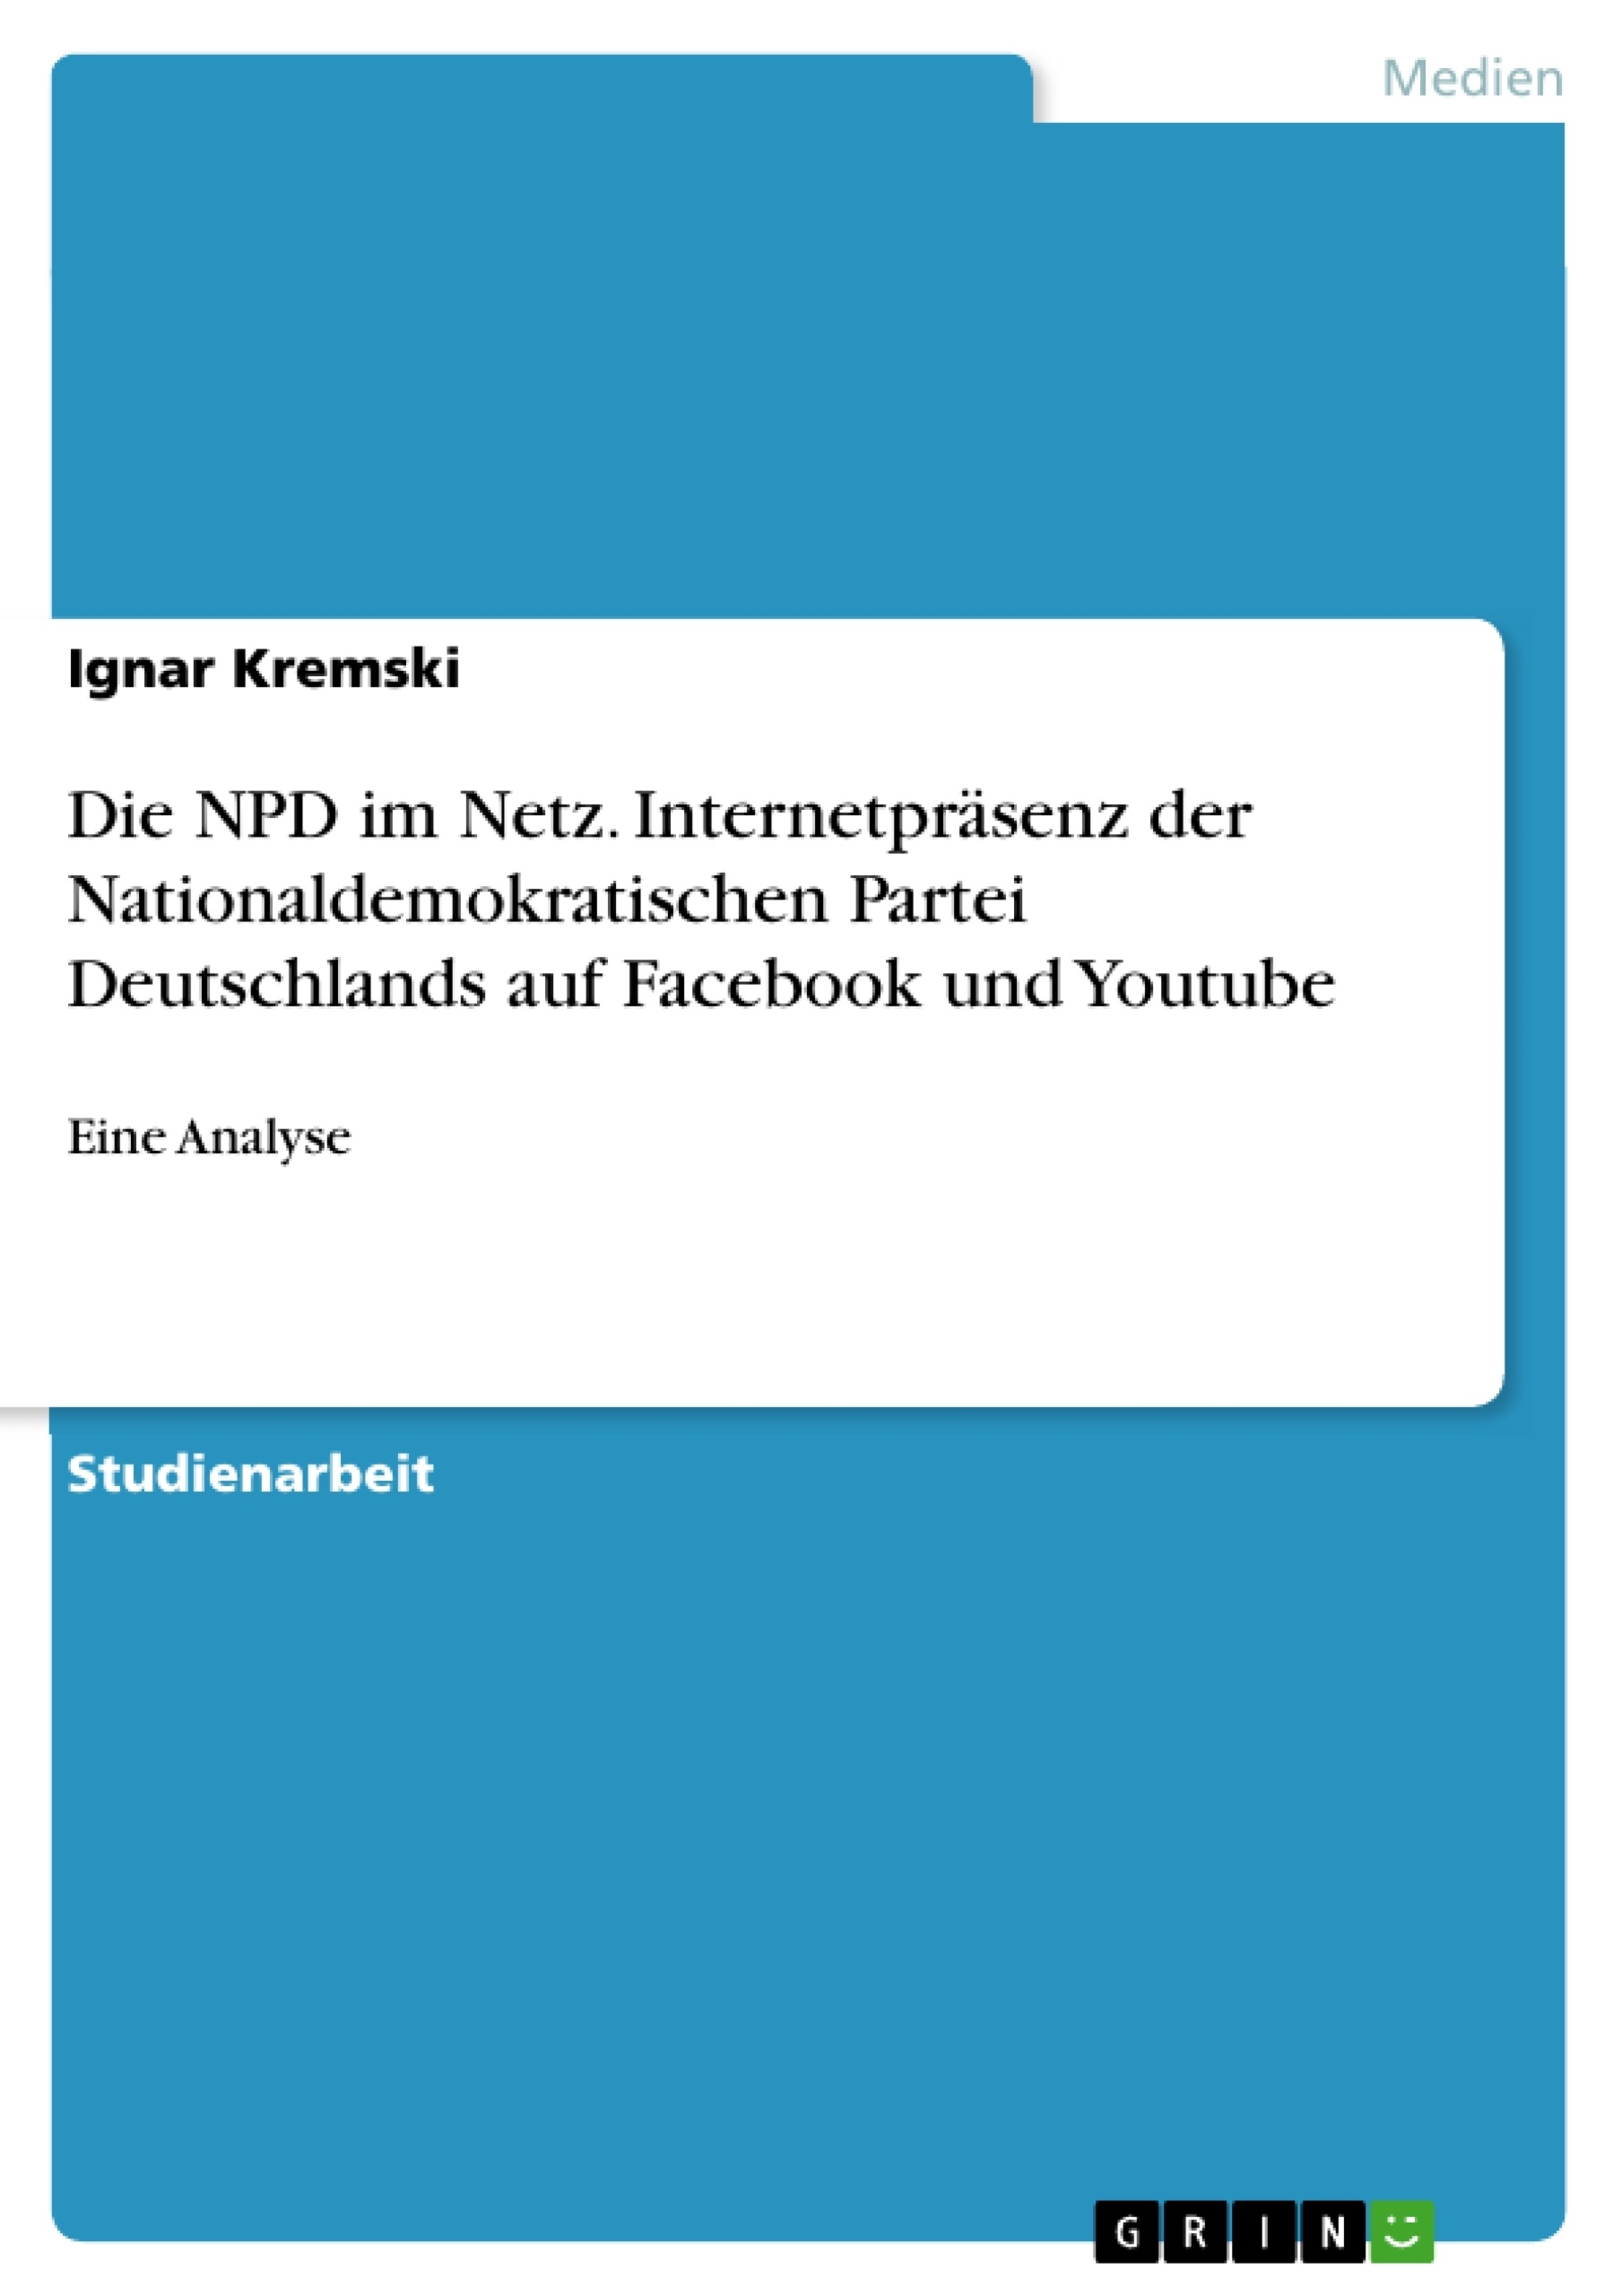 Titre: Die NPD im Netz. Internetpräsenz der Nationaldemokratischen Partei Deutschlands auf Facebook und Youtube